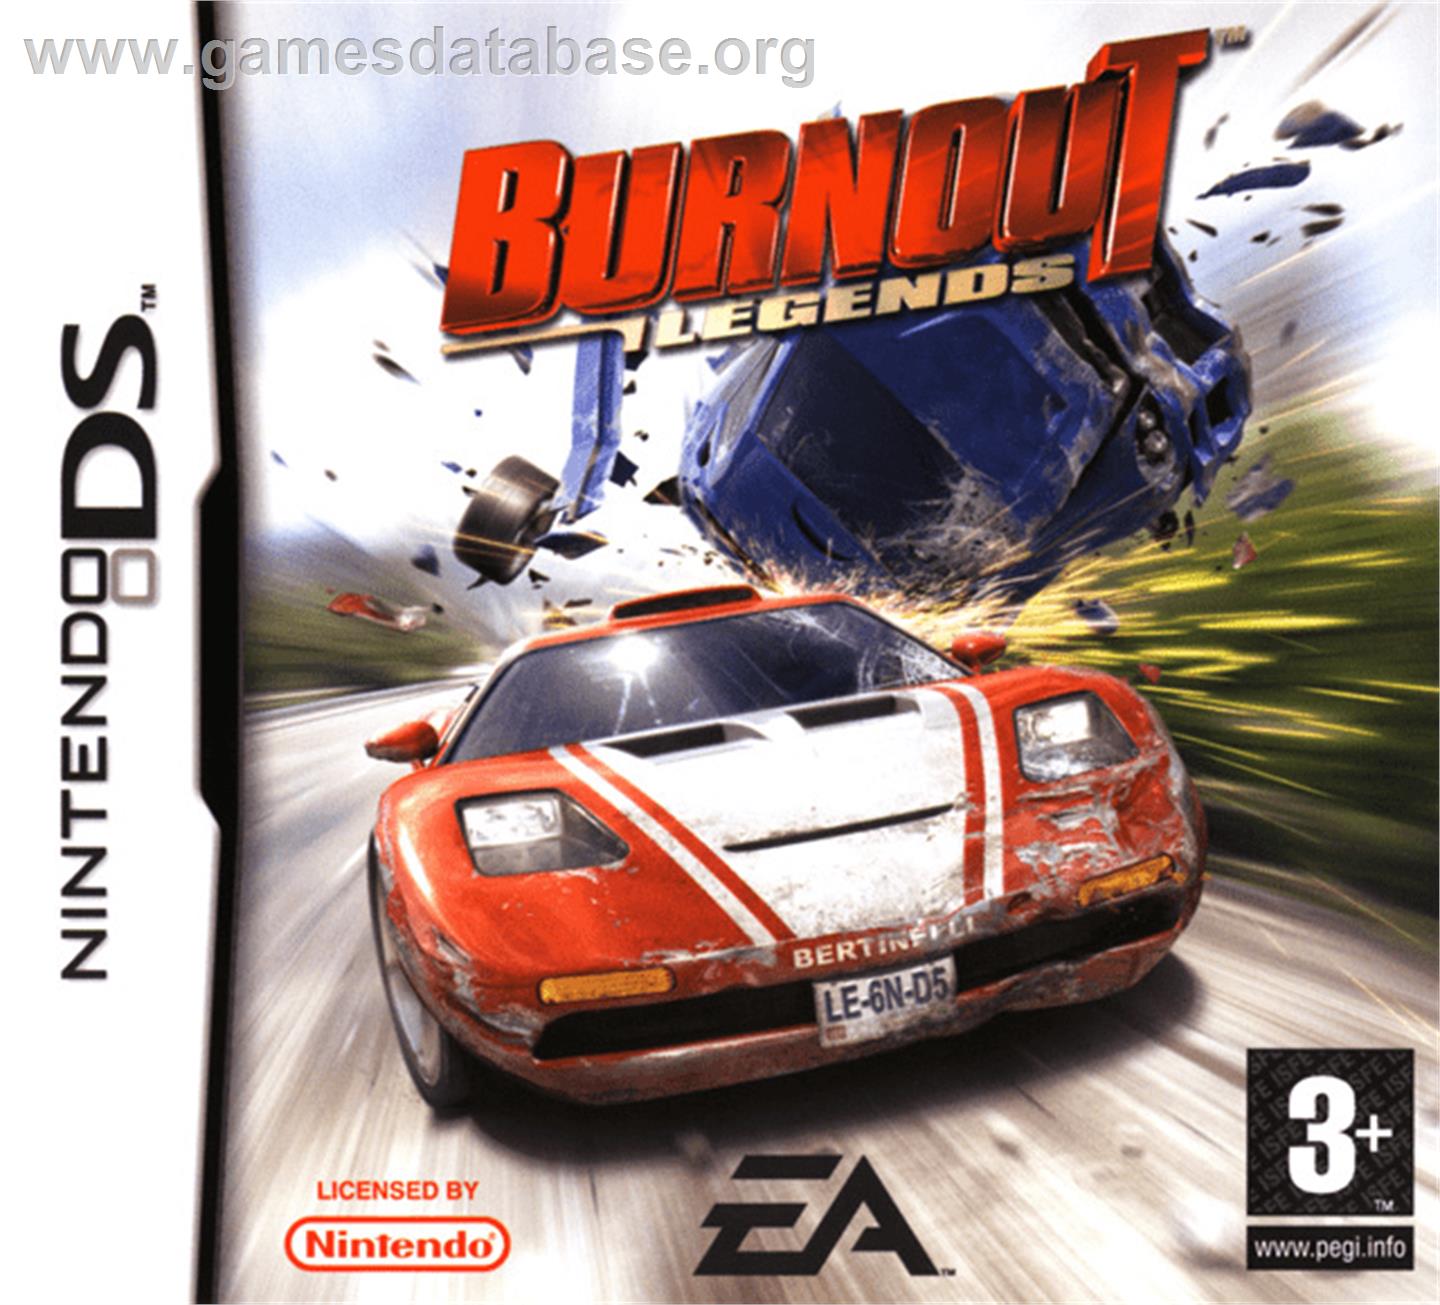 Burnout Legends - Nintendo DS - Artwork - Box